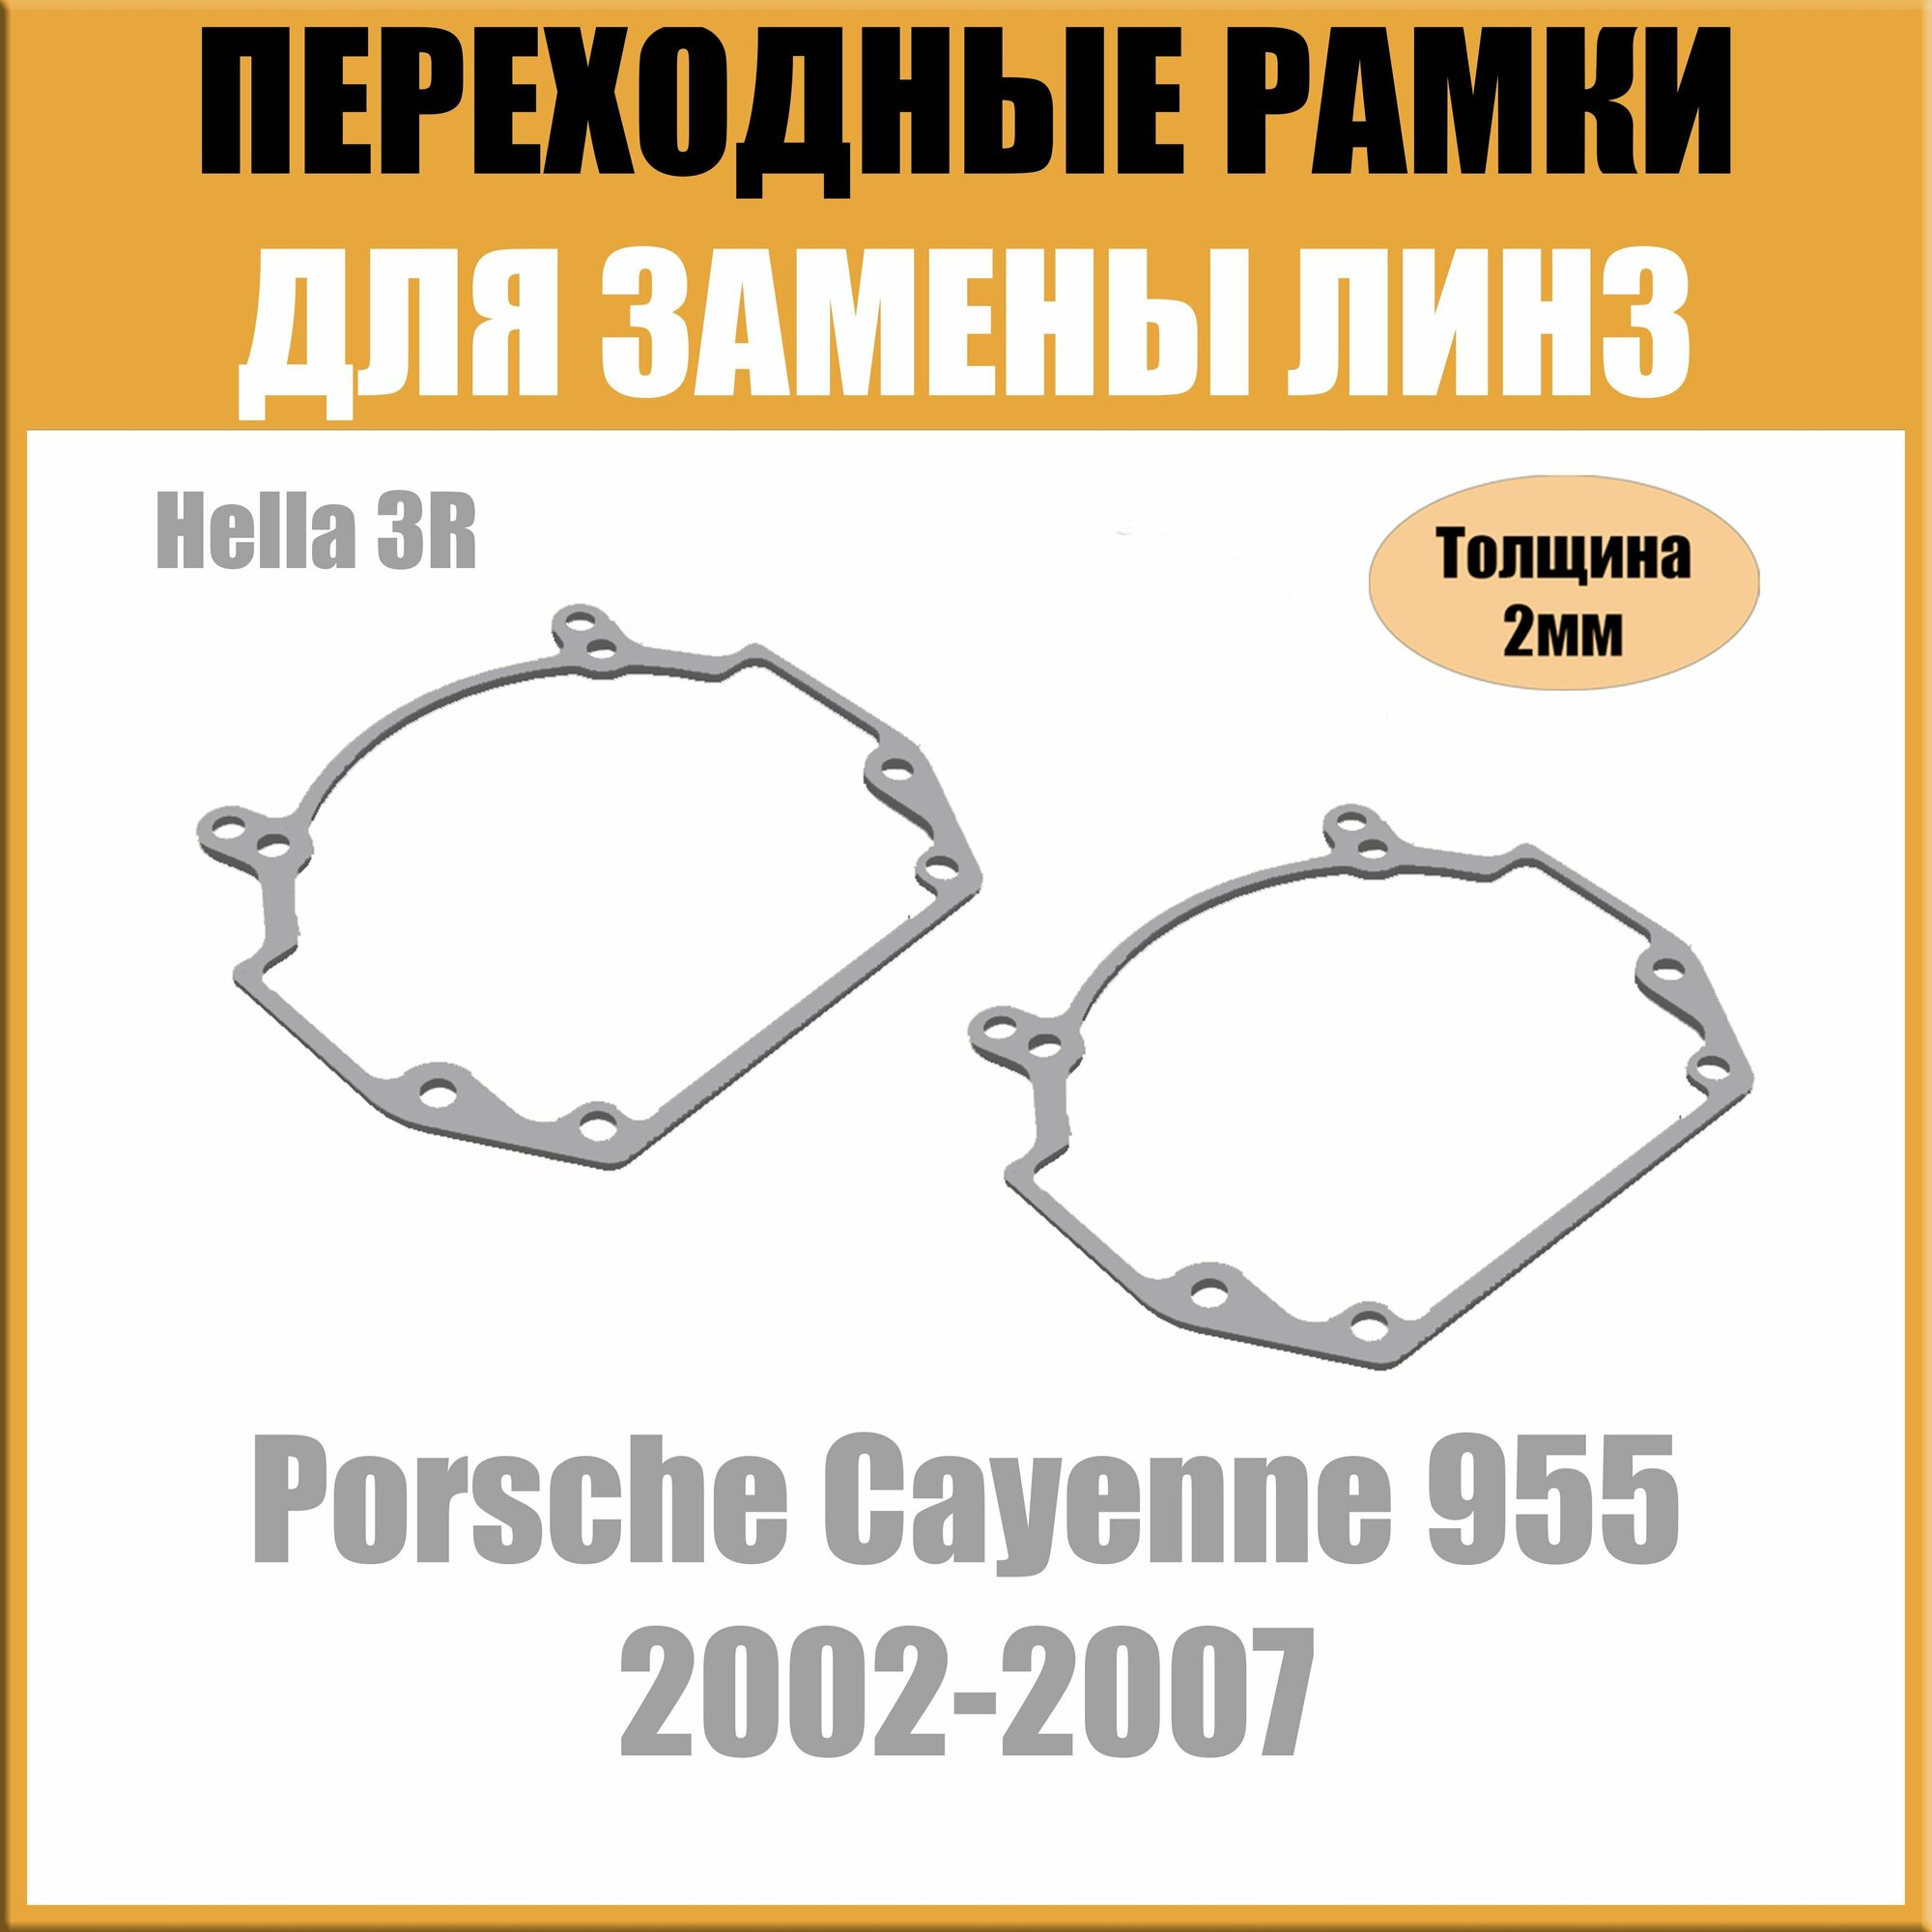 Переходные рамки для линз на Porsche Cayenne 955 (2002-2007) под модуль Hella 3R/Hella 5 (Комплект 2шт)